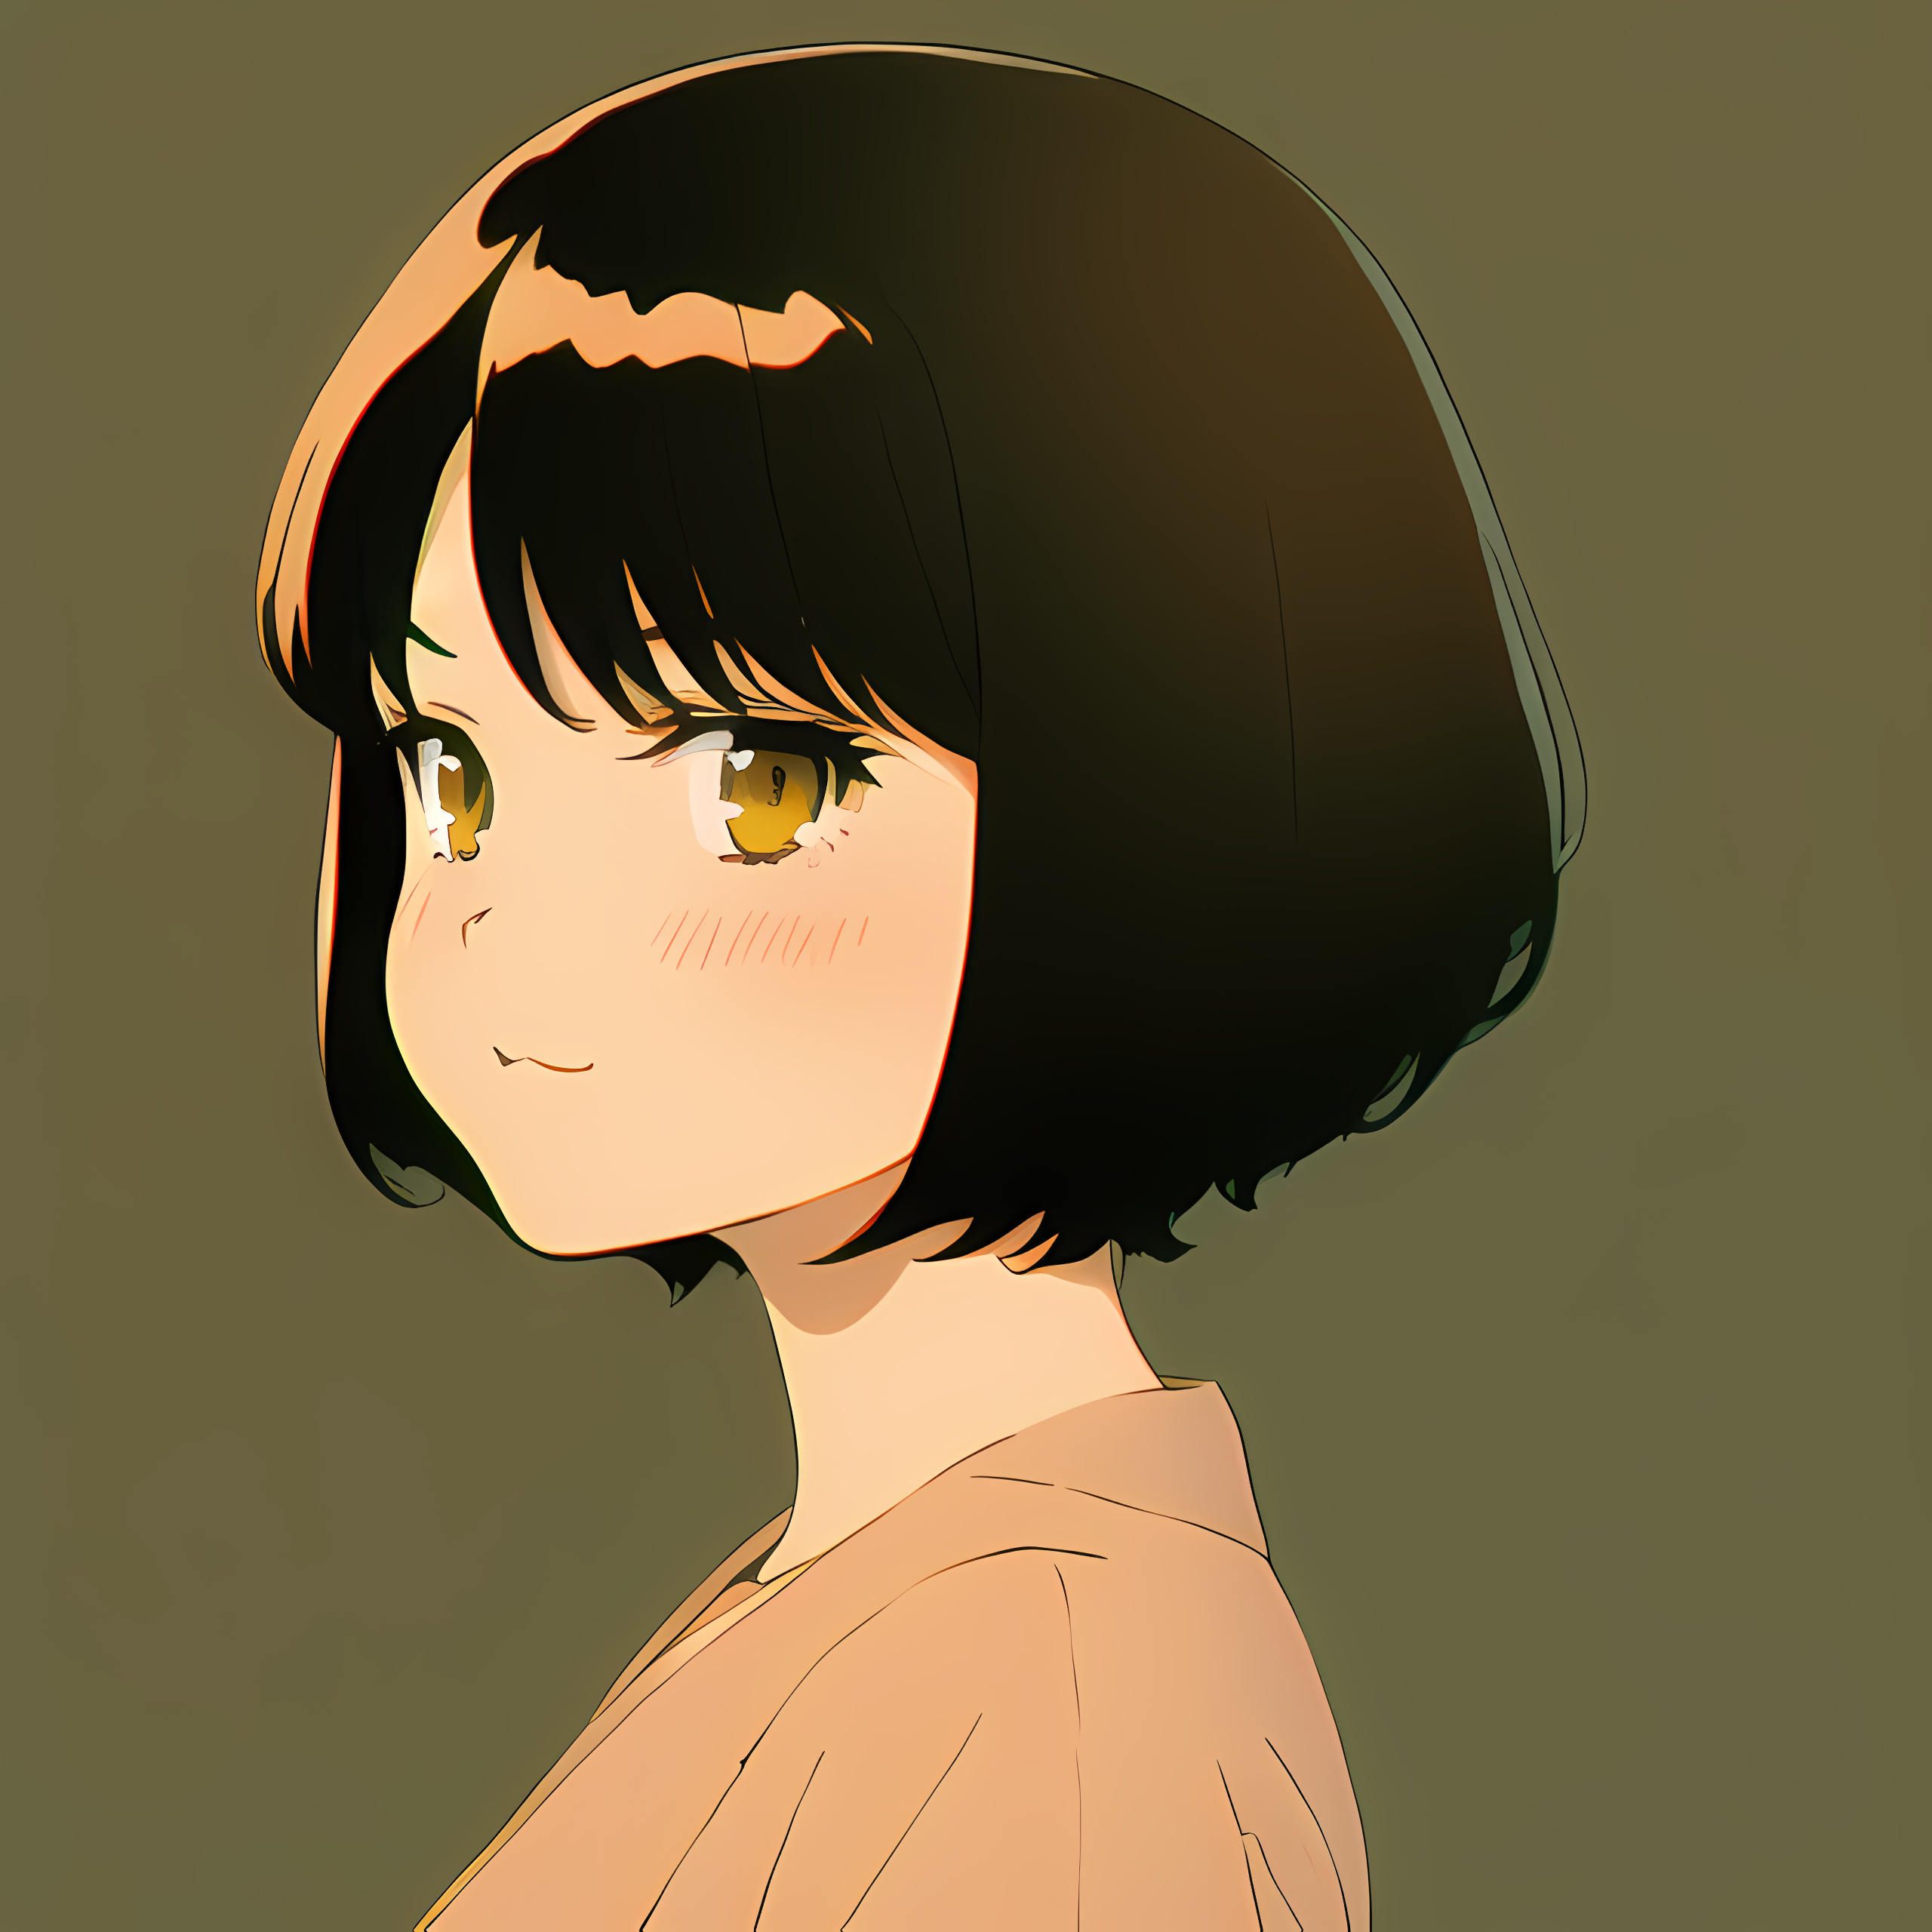 Novel Ai Anime Girls Simple Background Minimalism 2560x2560